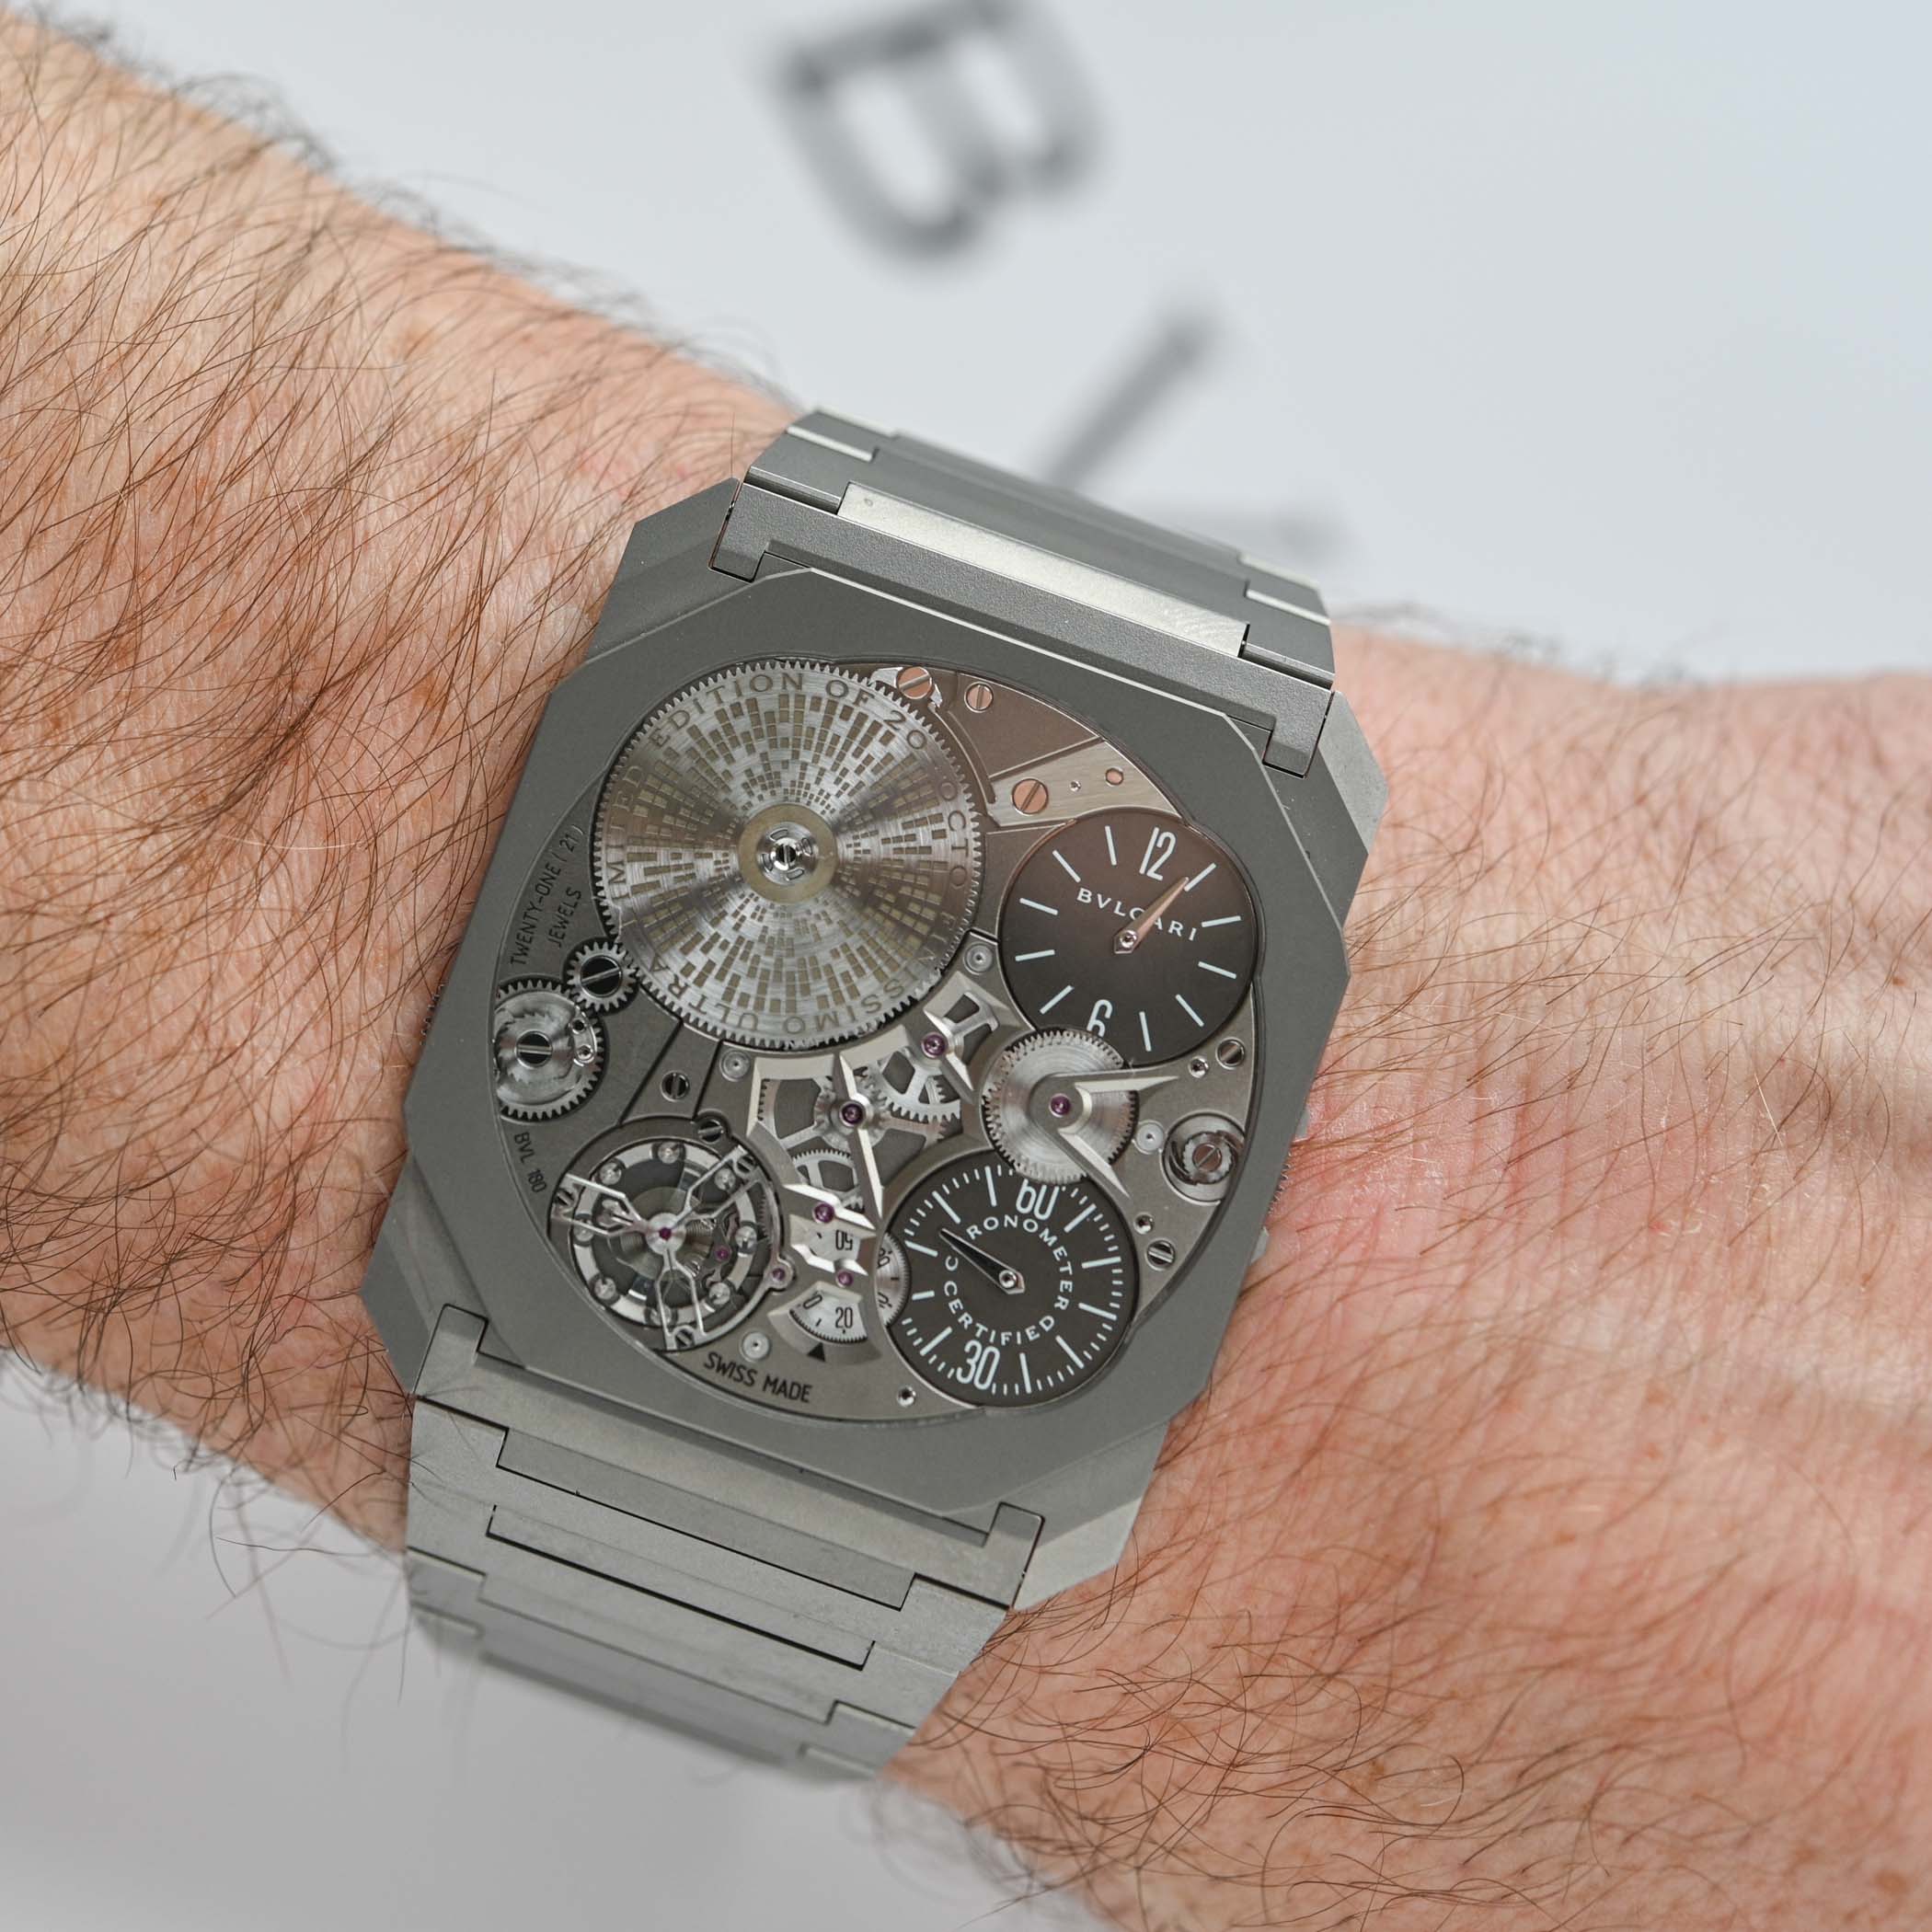 Reloj mecánico Bulgari Octo Finissimo Ultra COSC 1.70mm más delgado del mundo - revisión de video - 9